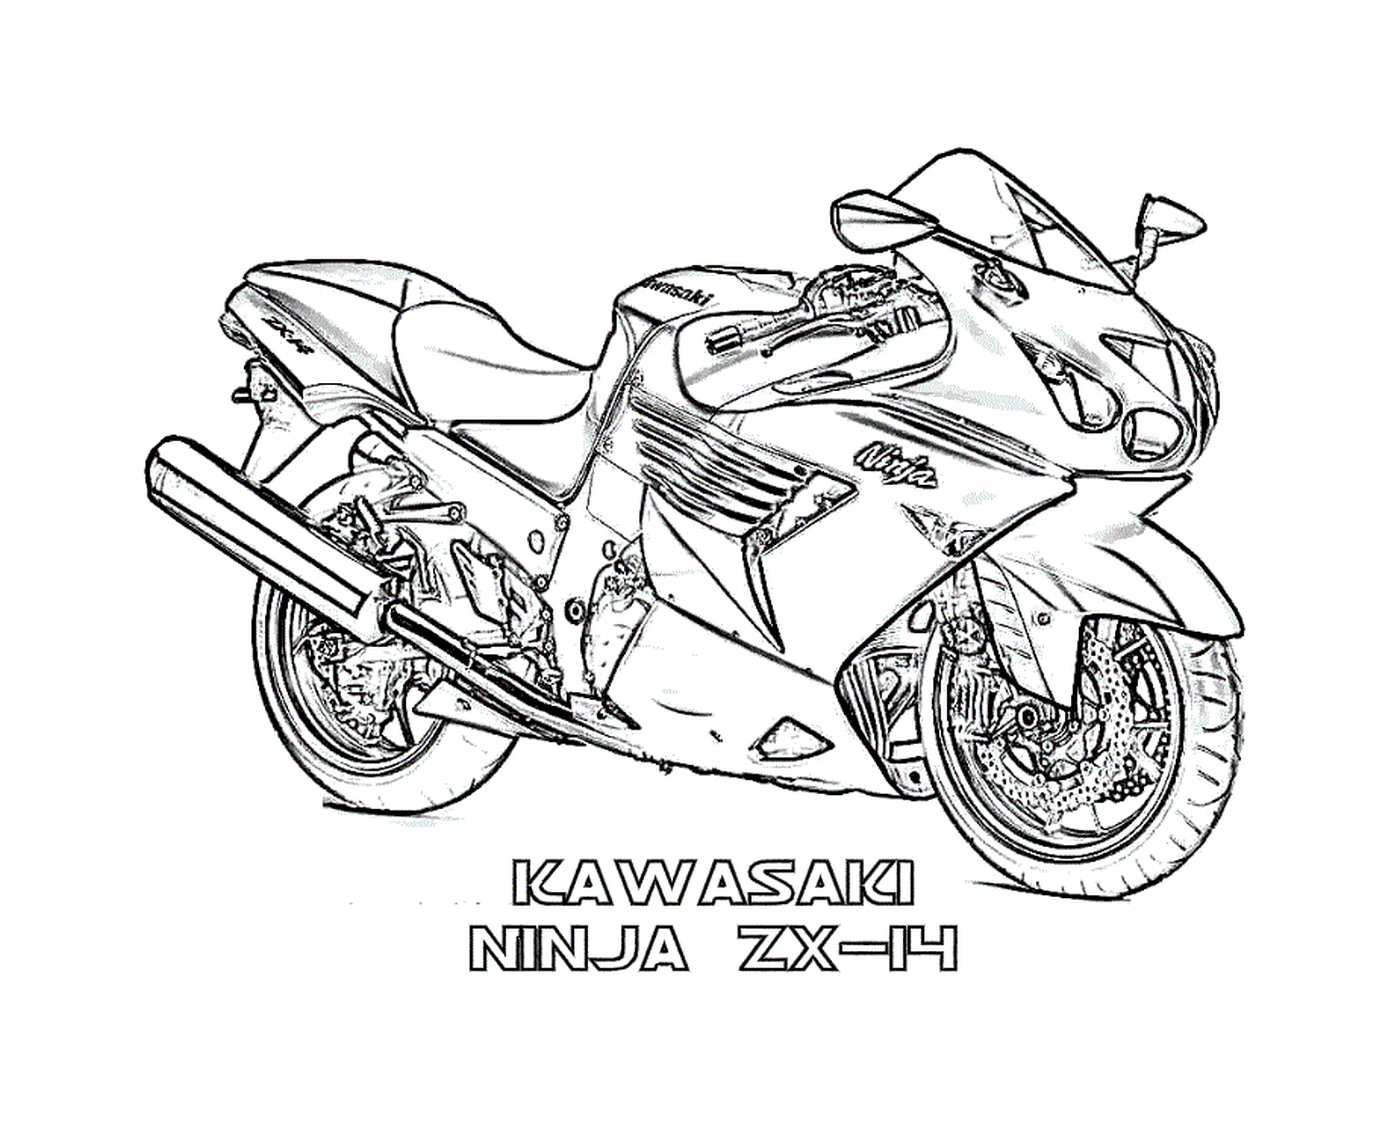  Kawasaki Ninja, motocicleta Batman 